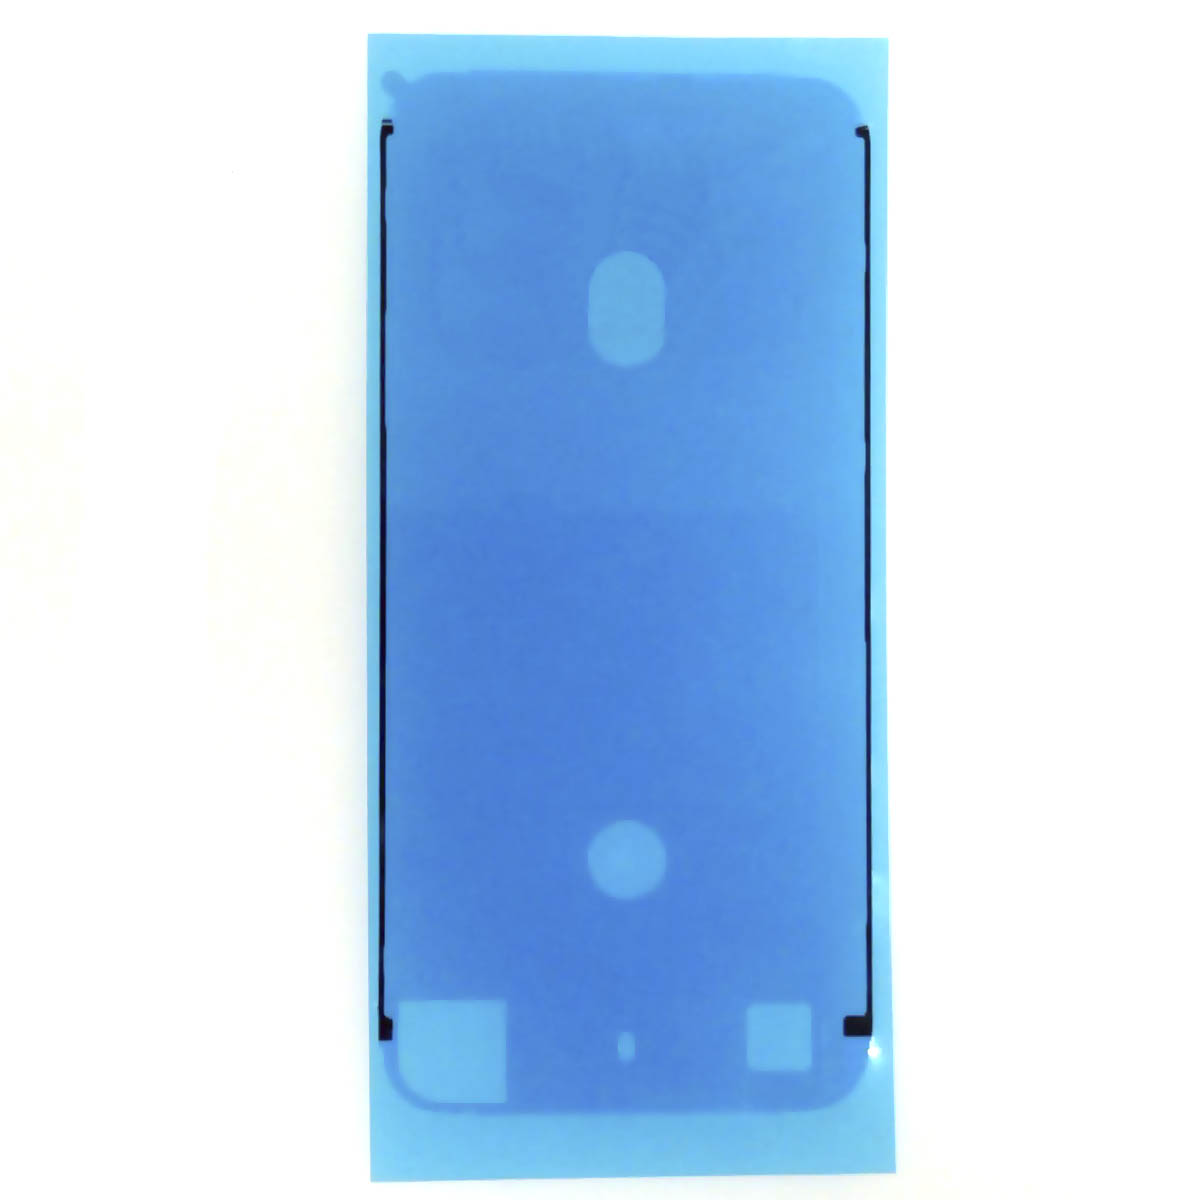 Пыле и влагозащитная прокладка, скотч сборки для APPLE iPhone 7, цвет белый